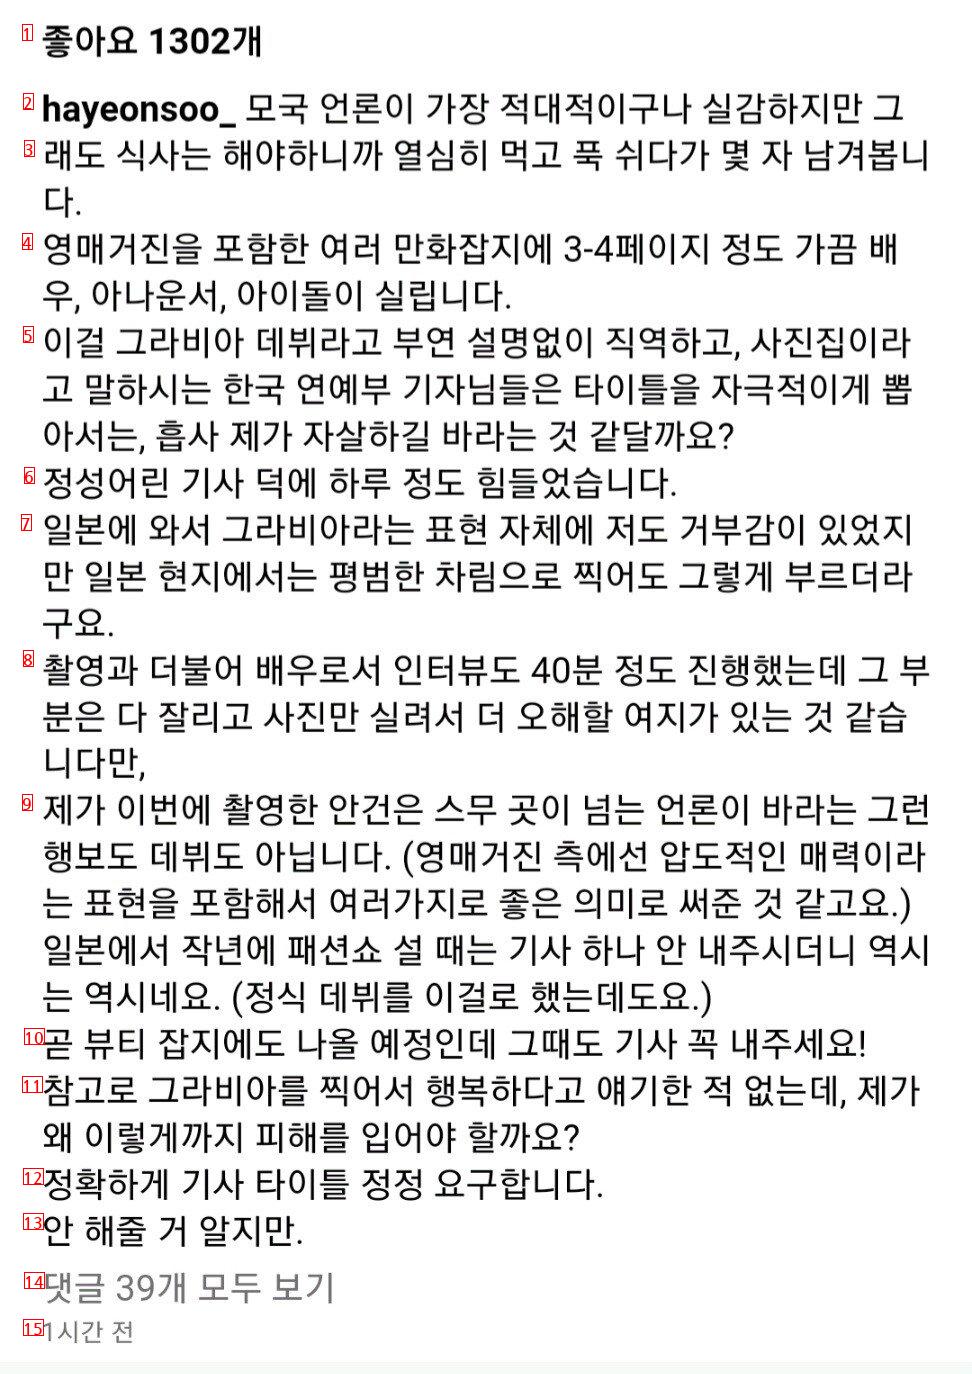 韓国芸能部の記者に広域狙撃文を掲載したハ·ヨンス